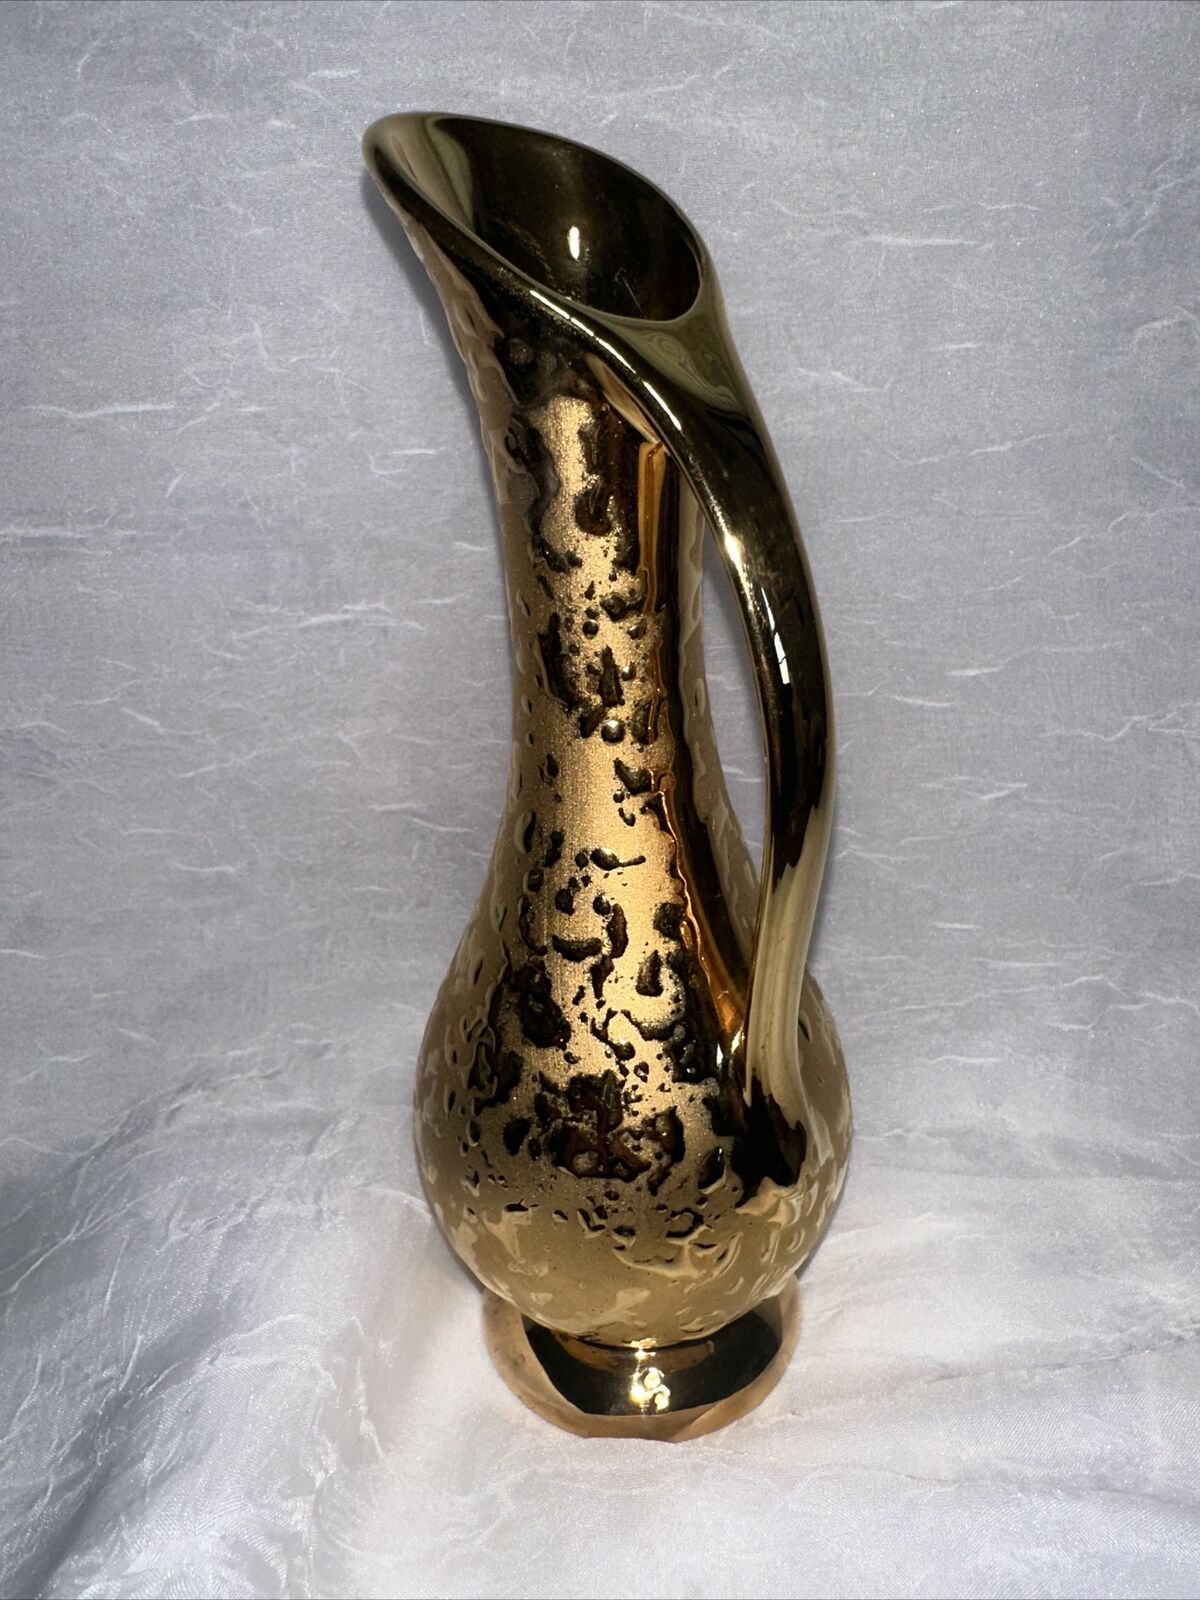 dixon art studio 22k gold plate weeping vase / pitcher